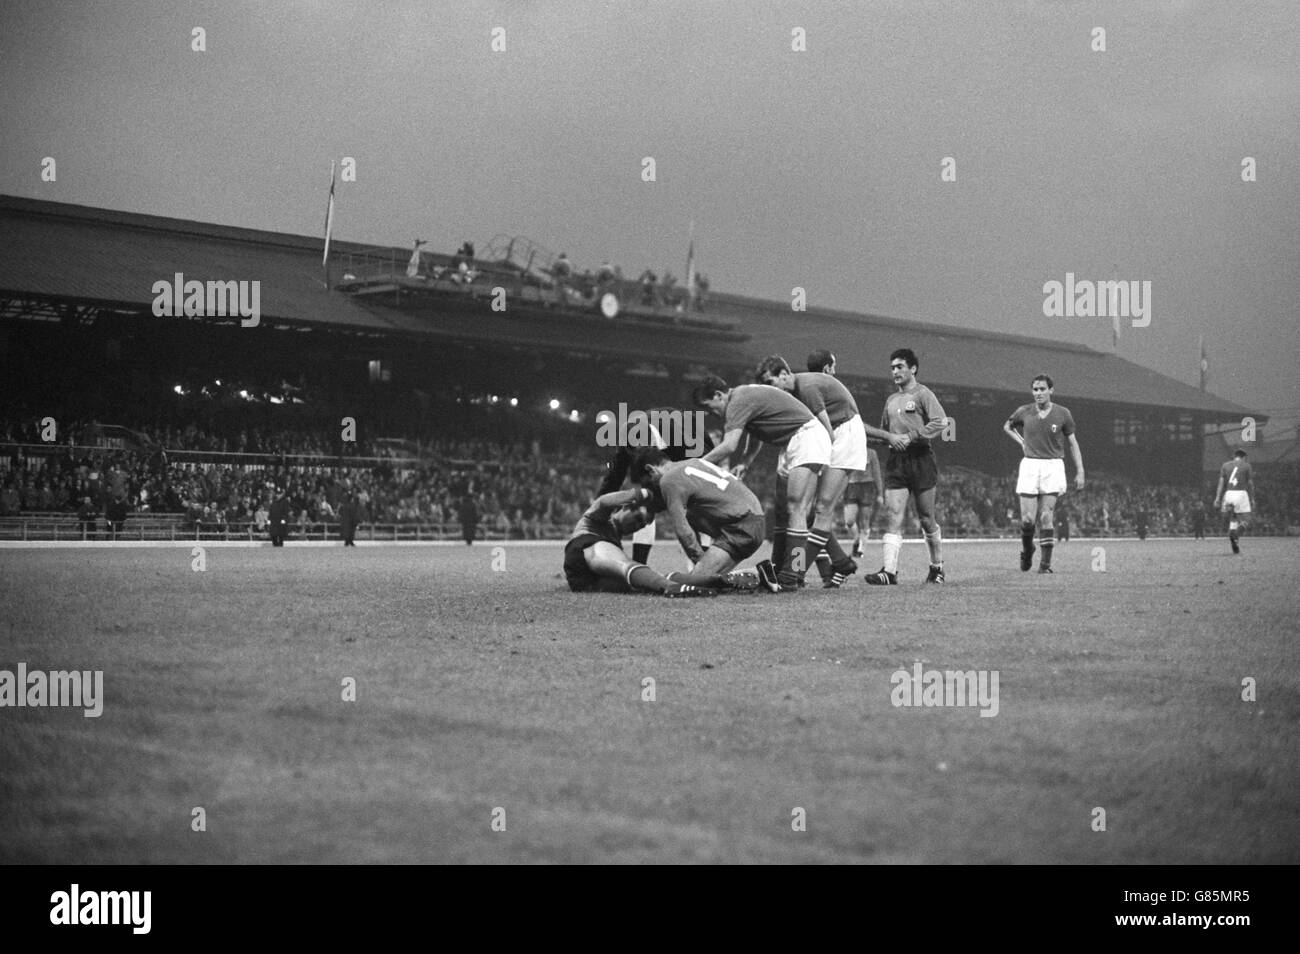 Fußball - FIFA Fußball-Weltmeisterschaft England 1966 - Gruppe 4 - Chile gegen Italien - Roker Park. Chiles Armando Tobar liegt am Boden verletzt. Stockfoto